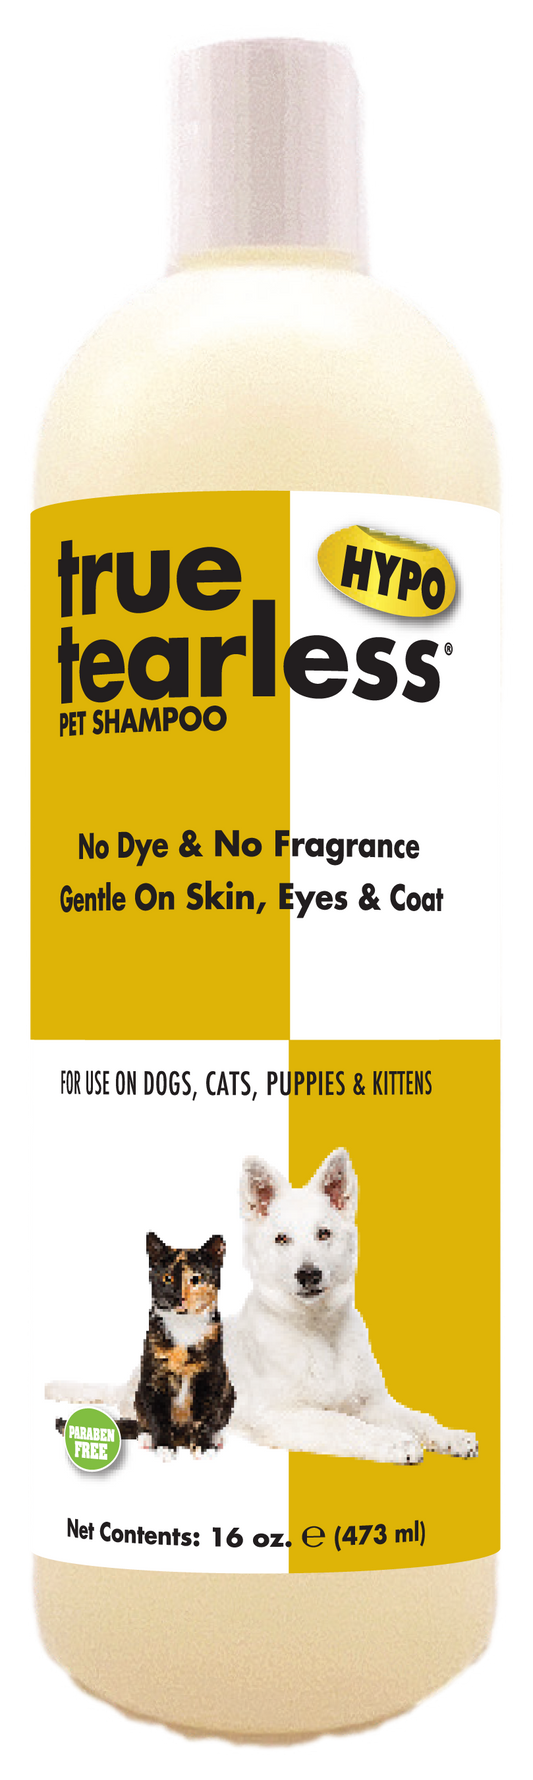 True Tearless® HYPO Pet Shampoo | Showseason®